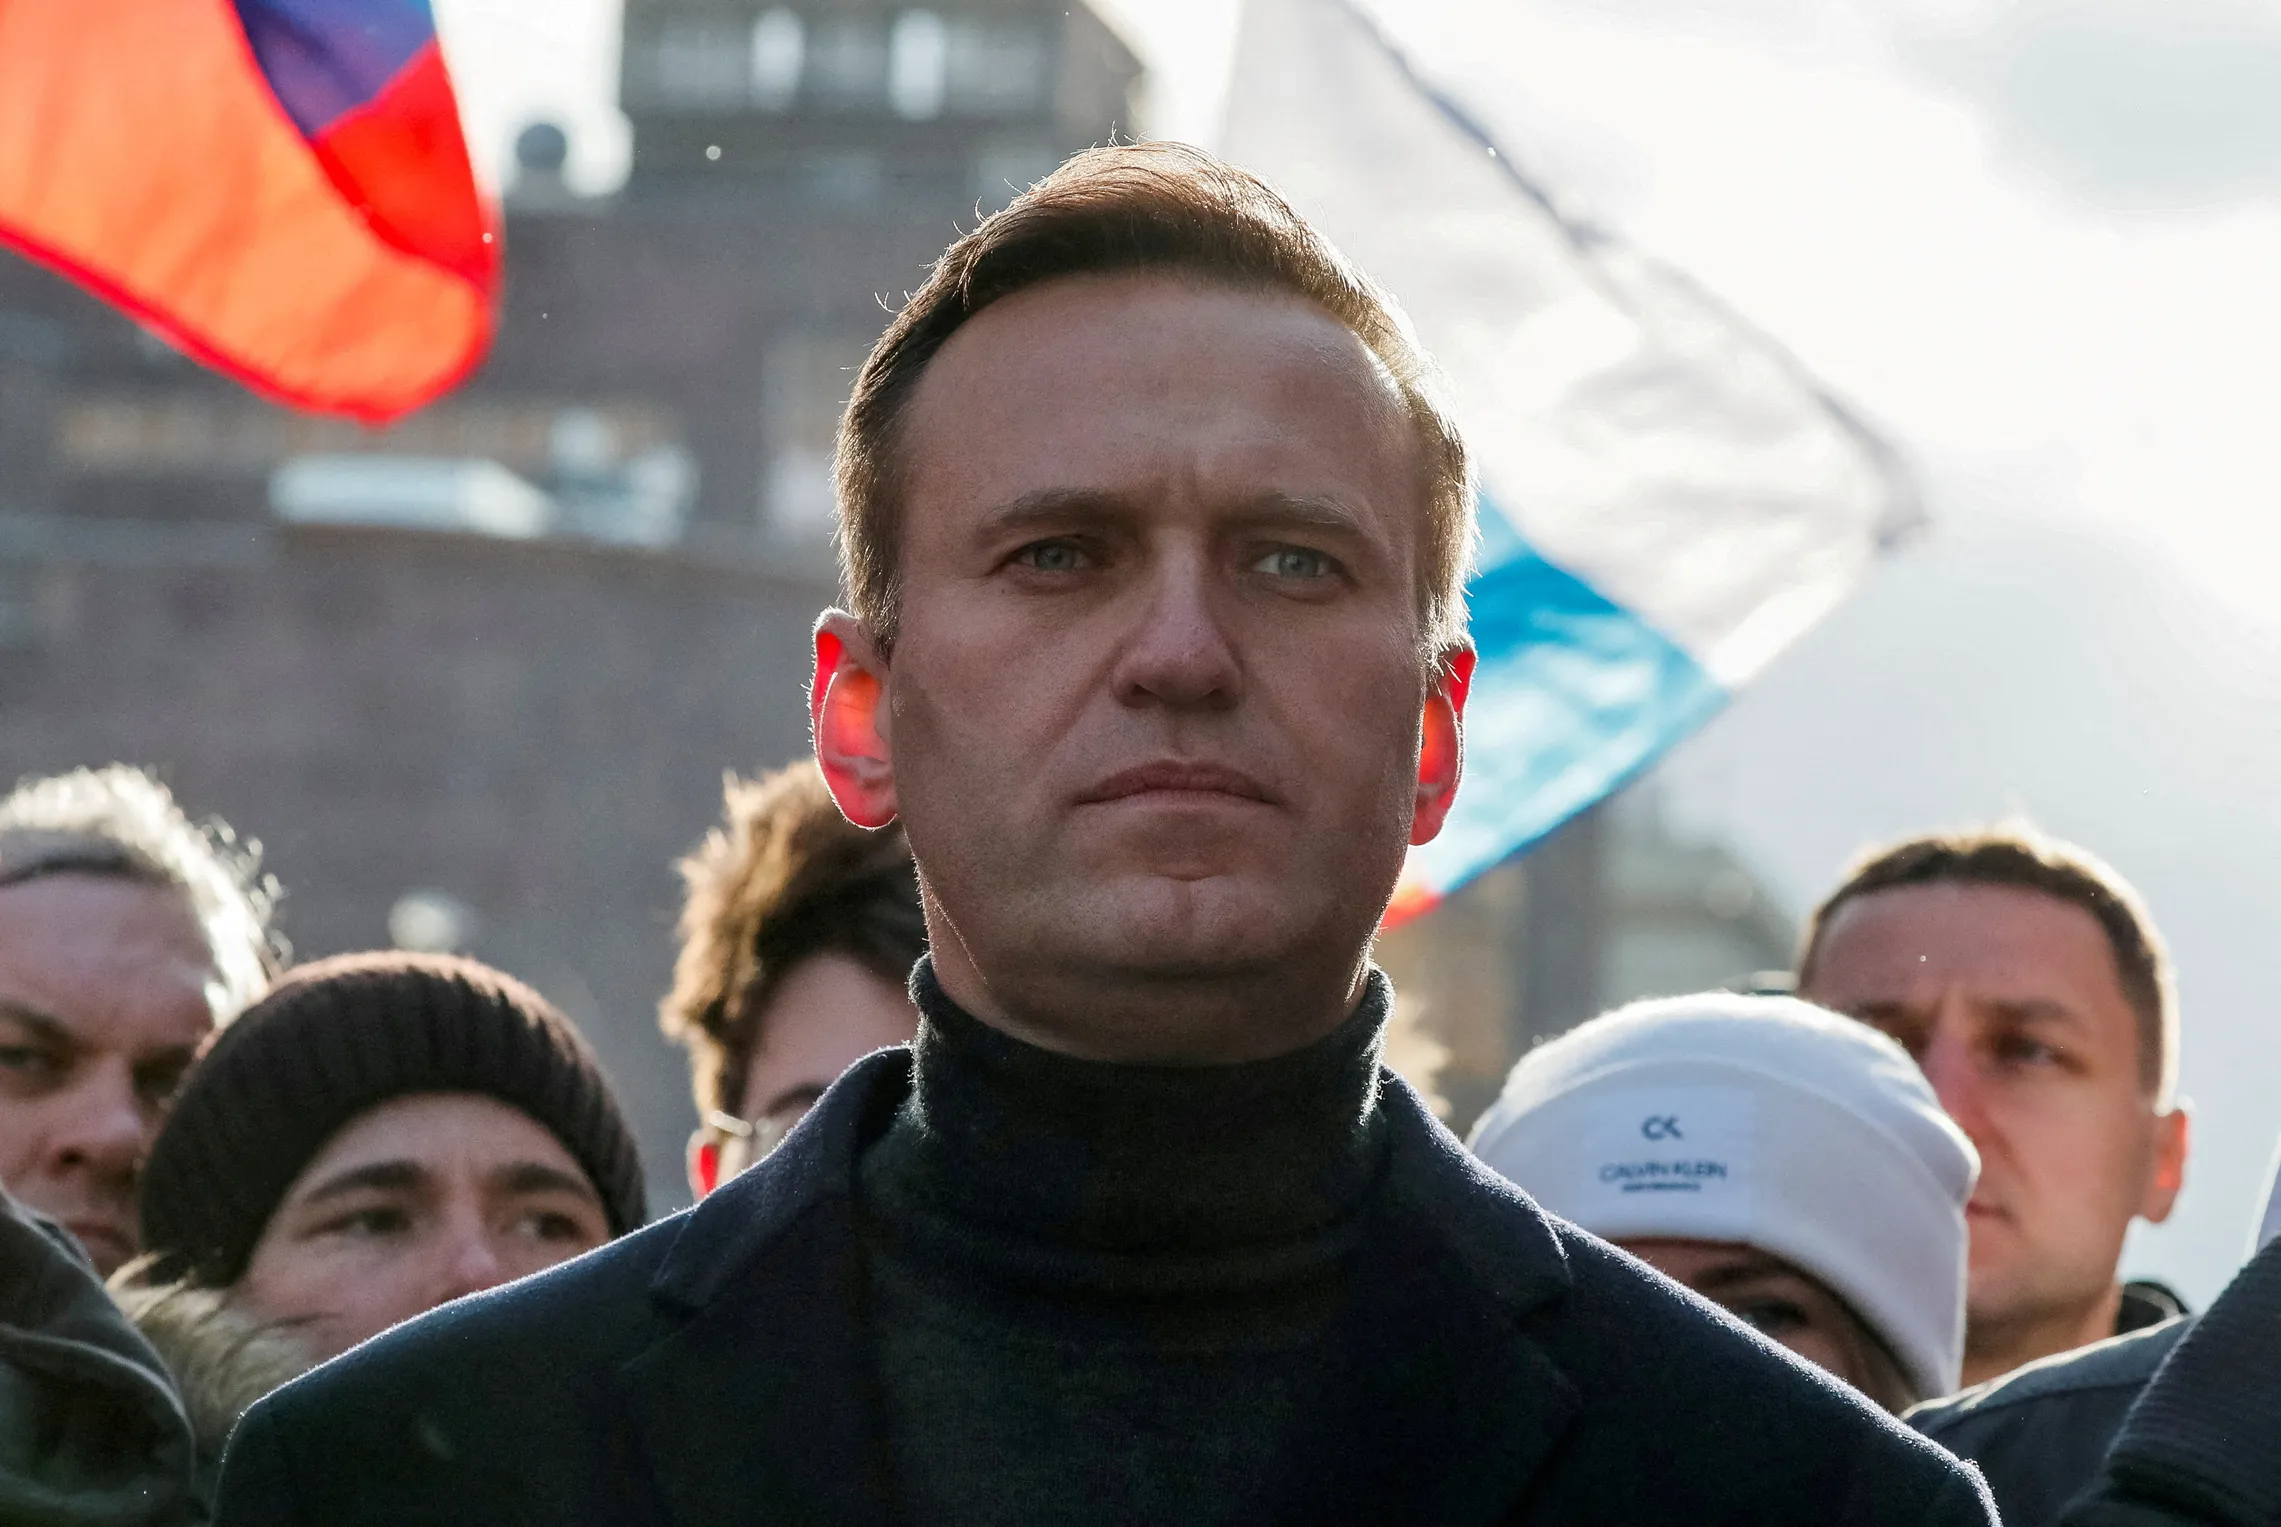 
											
											43 davlat Navalniy bo‘yicha xalqaro tergov o‘tkazilishini talab qilmoqda
											
											